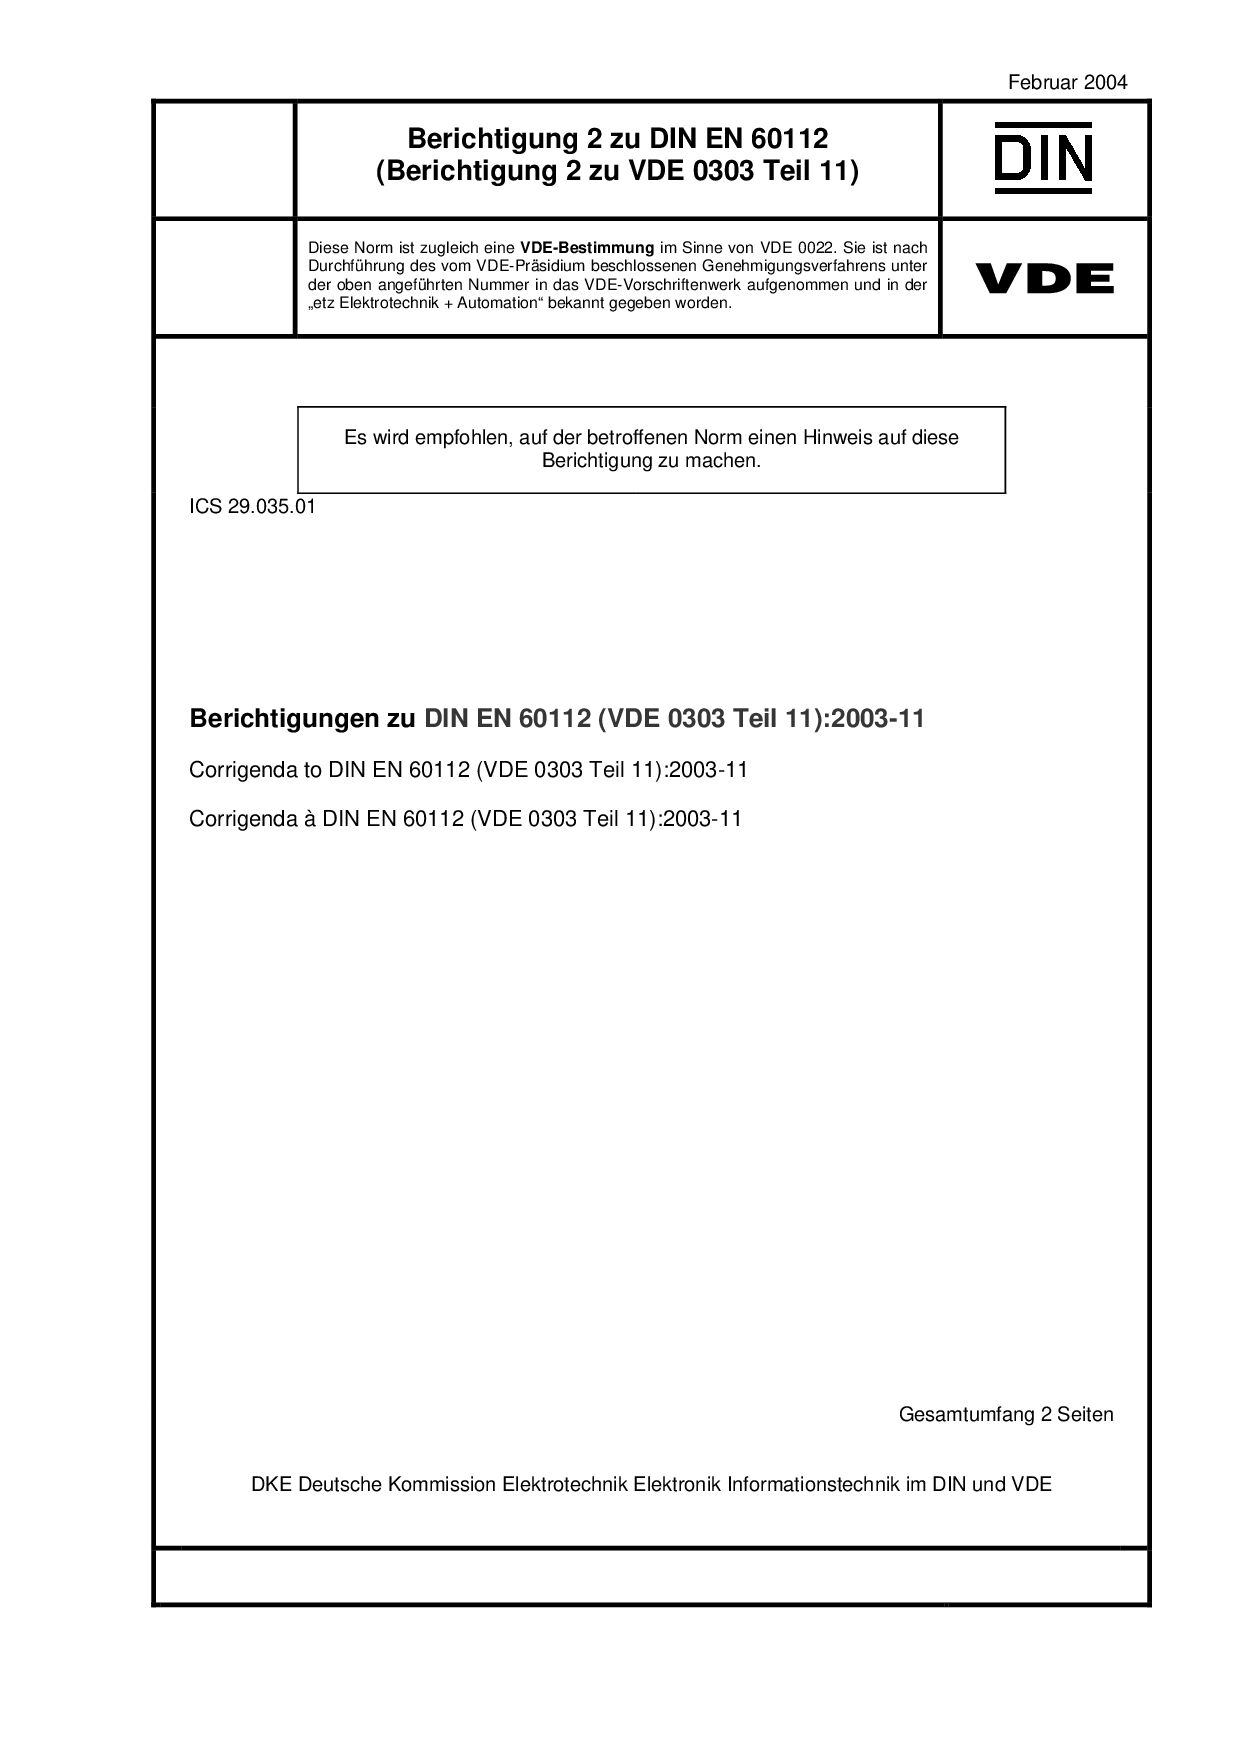 VDE 0303-11 Ber 2-2004*DIN EN 60112 Berichtigung 2:2004封面图